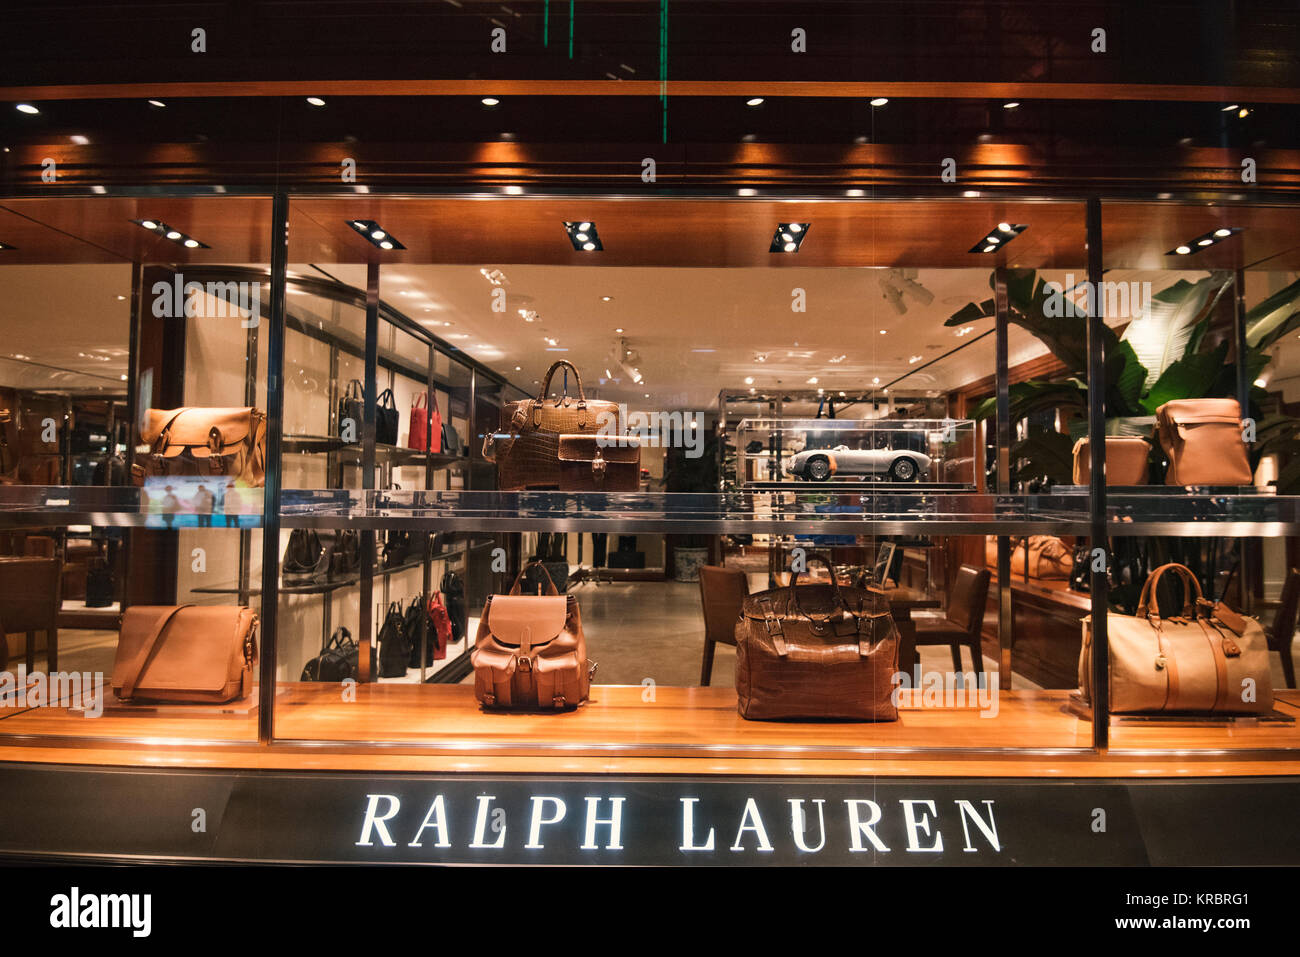 Ralph Lauren luxury store front Stock 